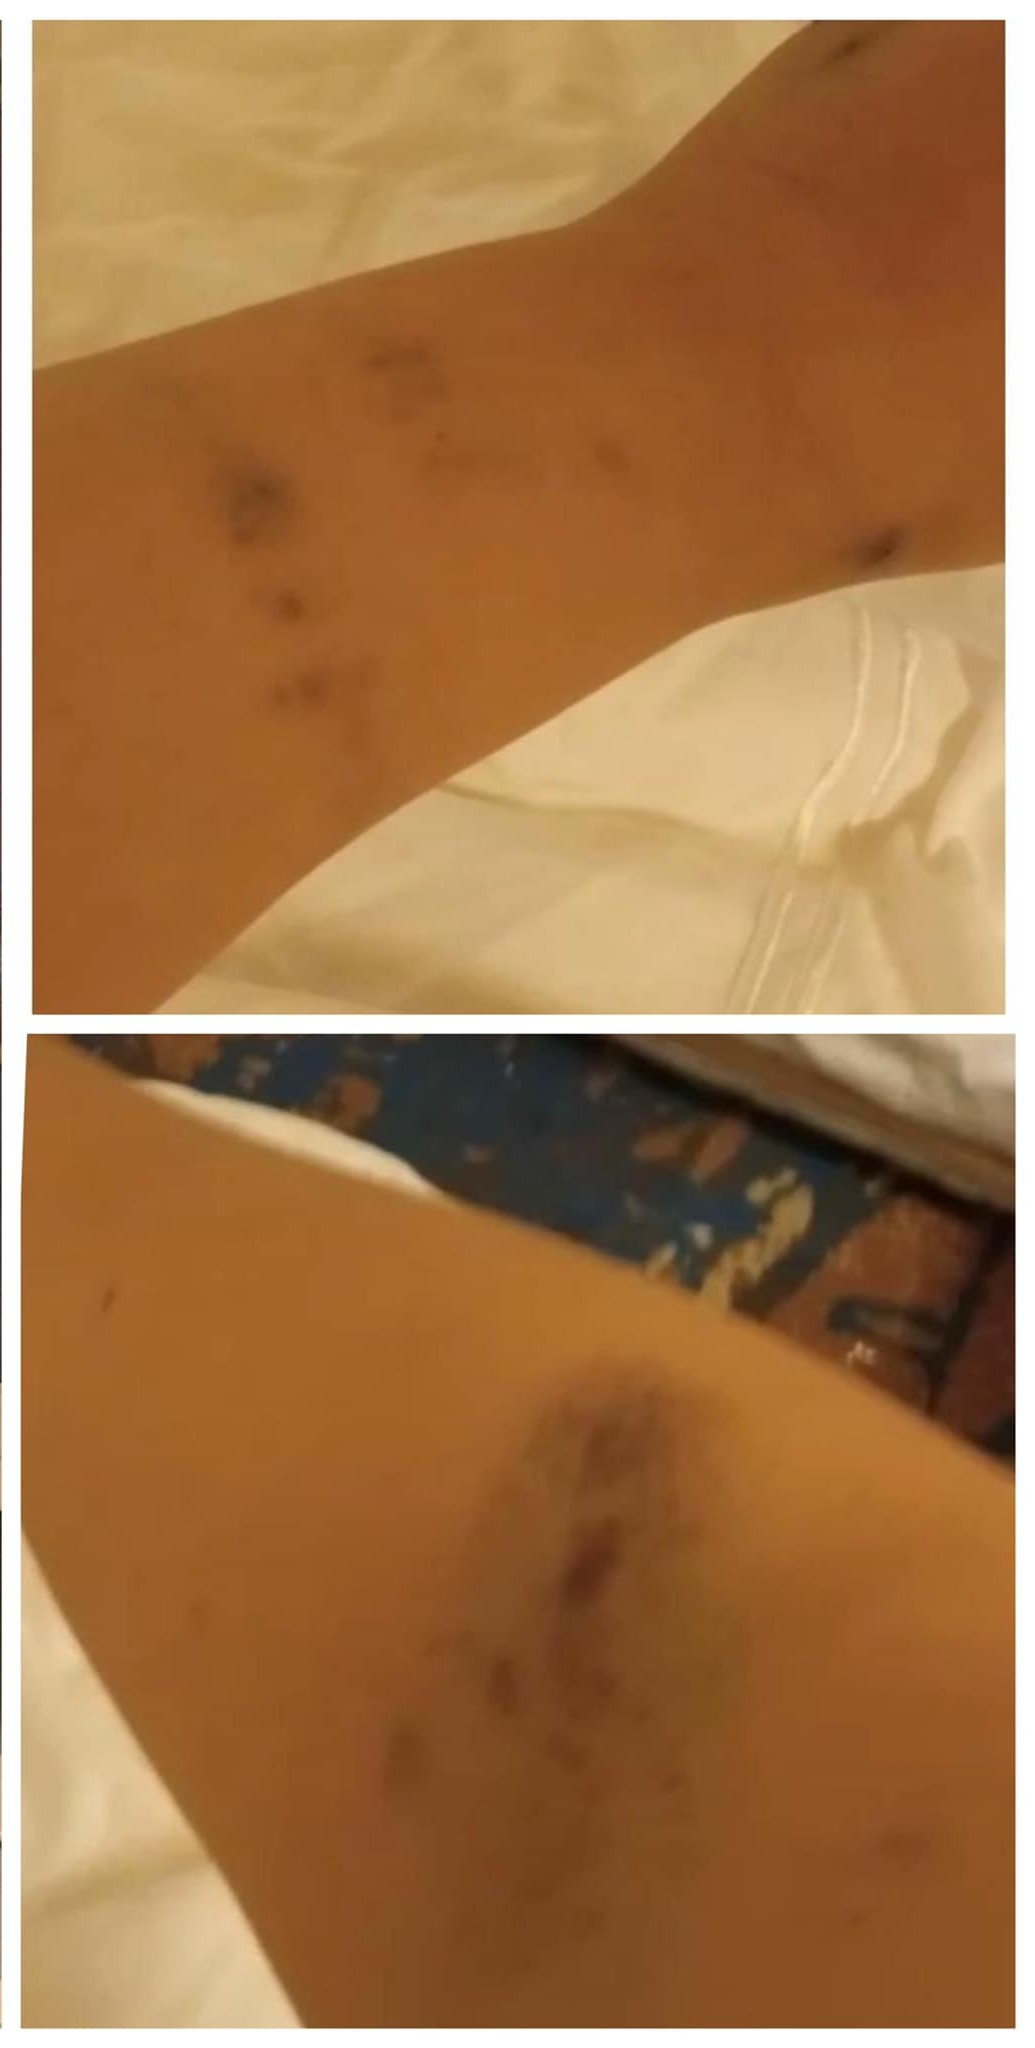 singaporean-woman-saudi-arabia-bruises.jpg